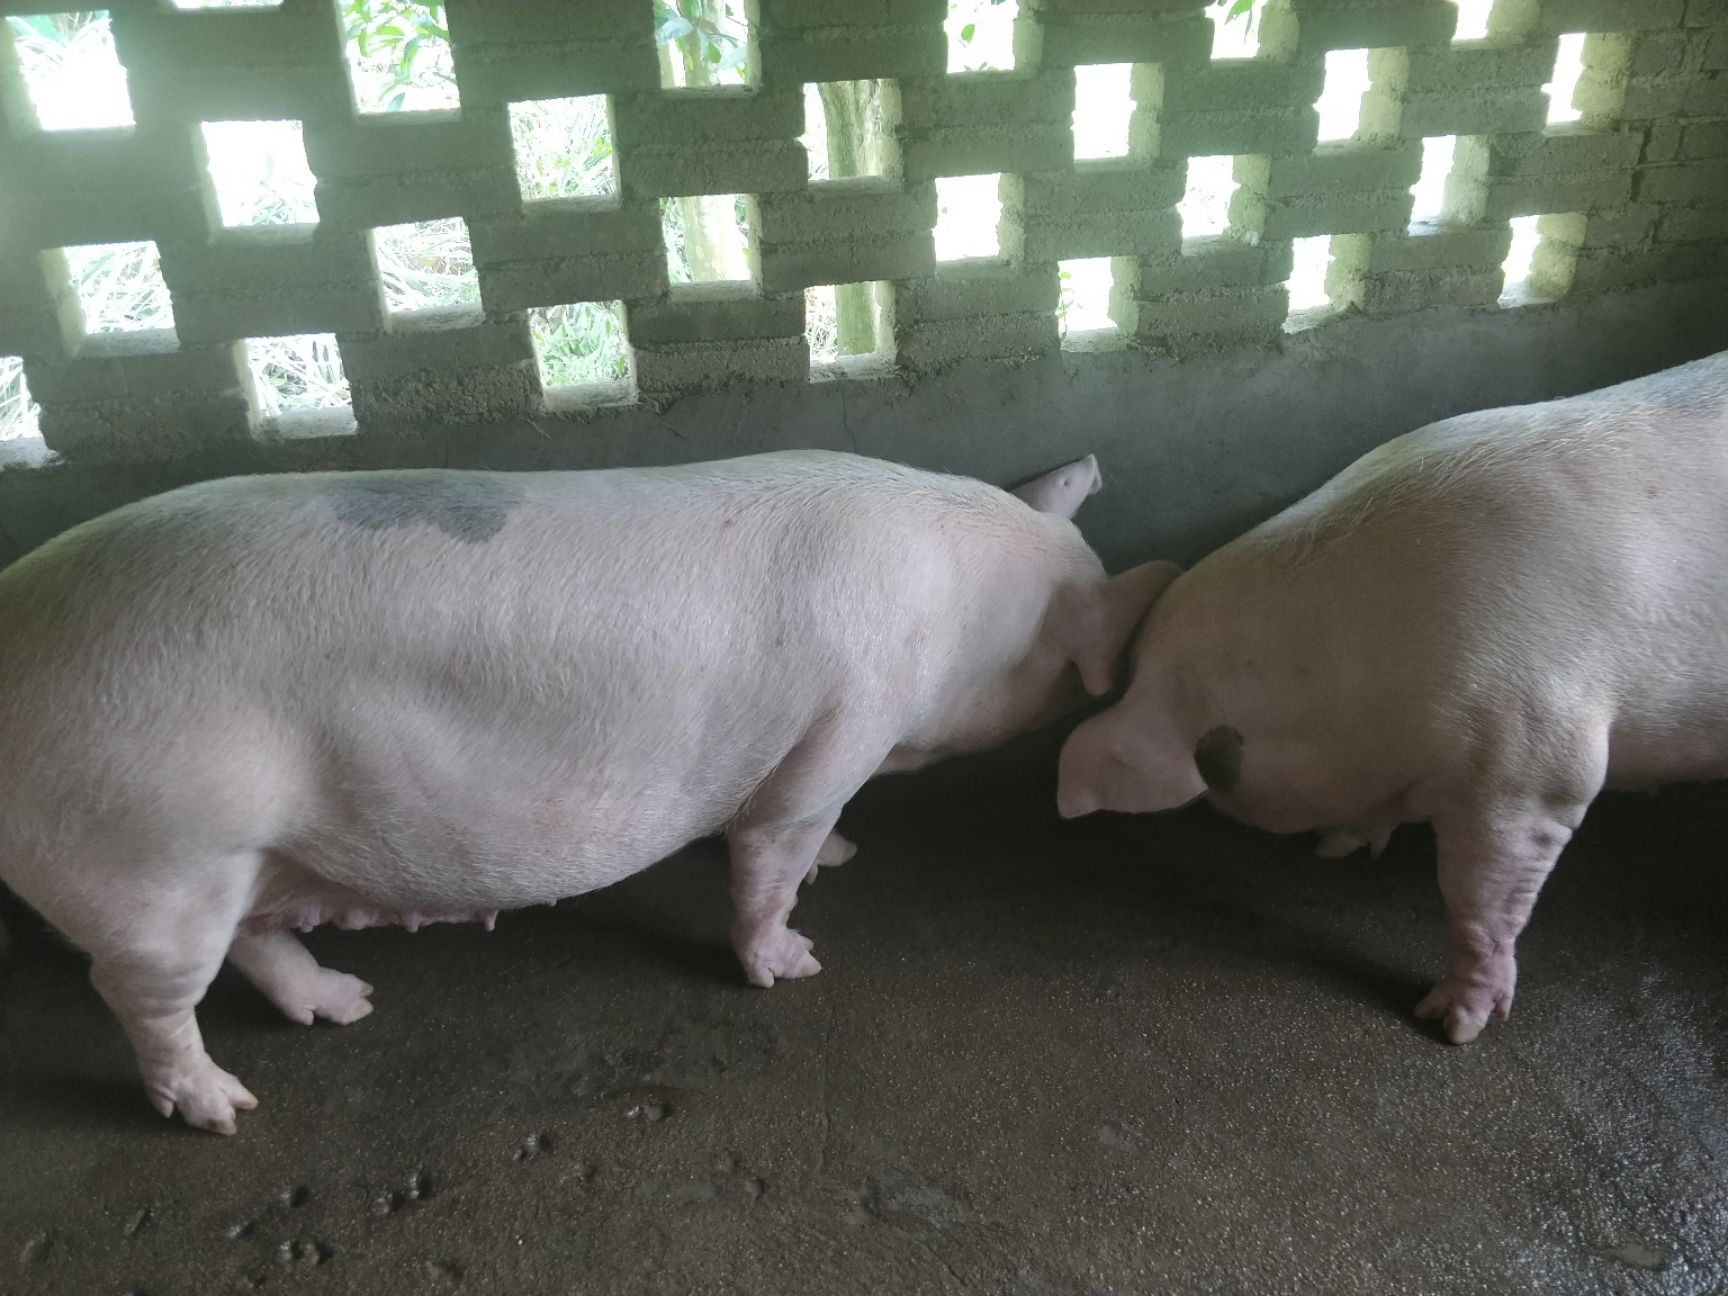 土白猪 空怀长白母猪,产两胎的青年母猪.自家养的母猪,无任何病故